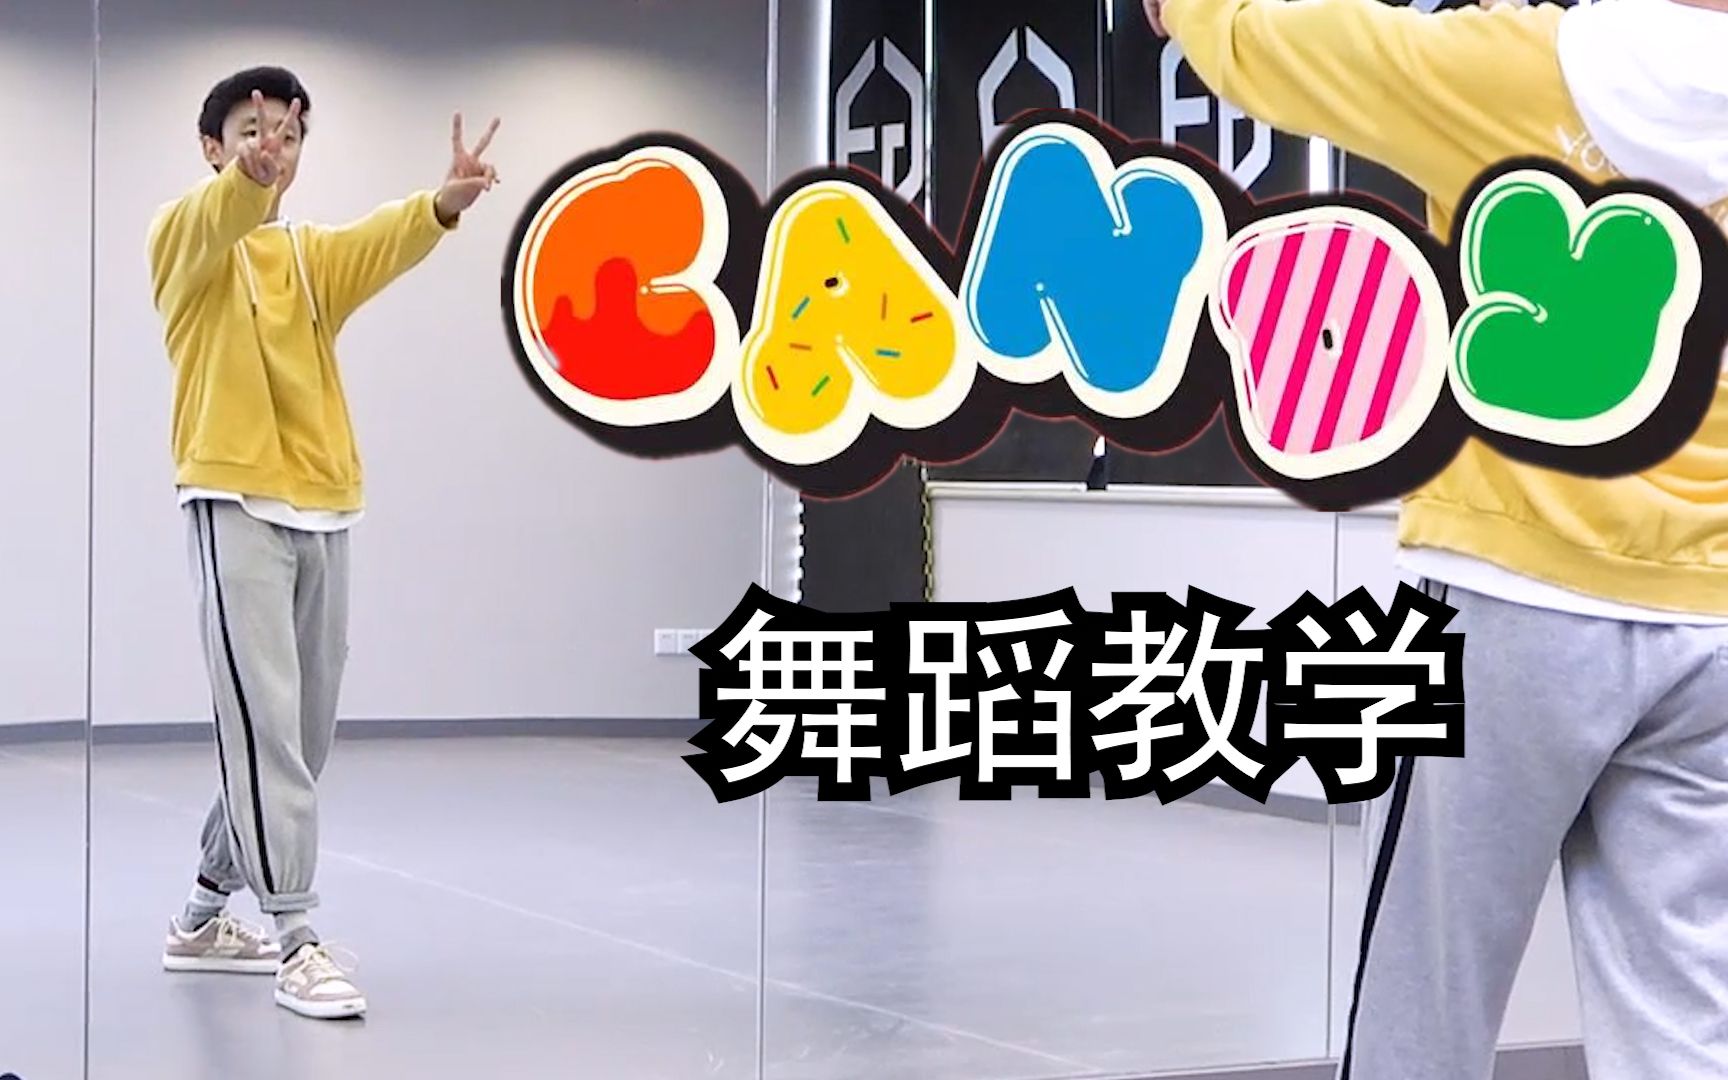 【南舞团】《candy》舞蹈教学 NCT DREAM 全曲翻跳（上）